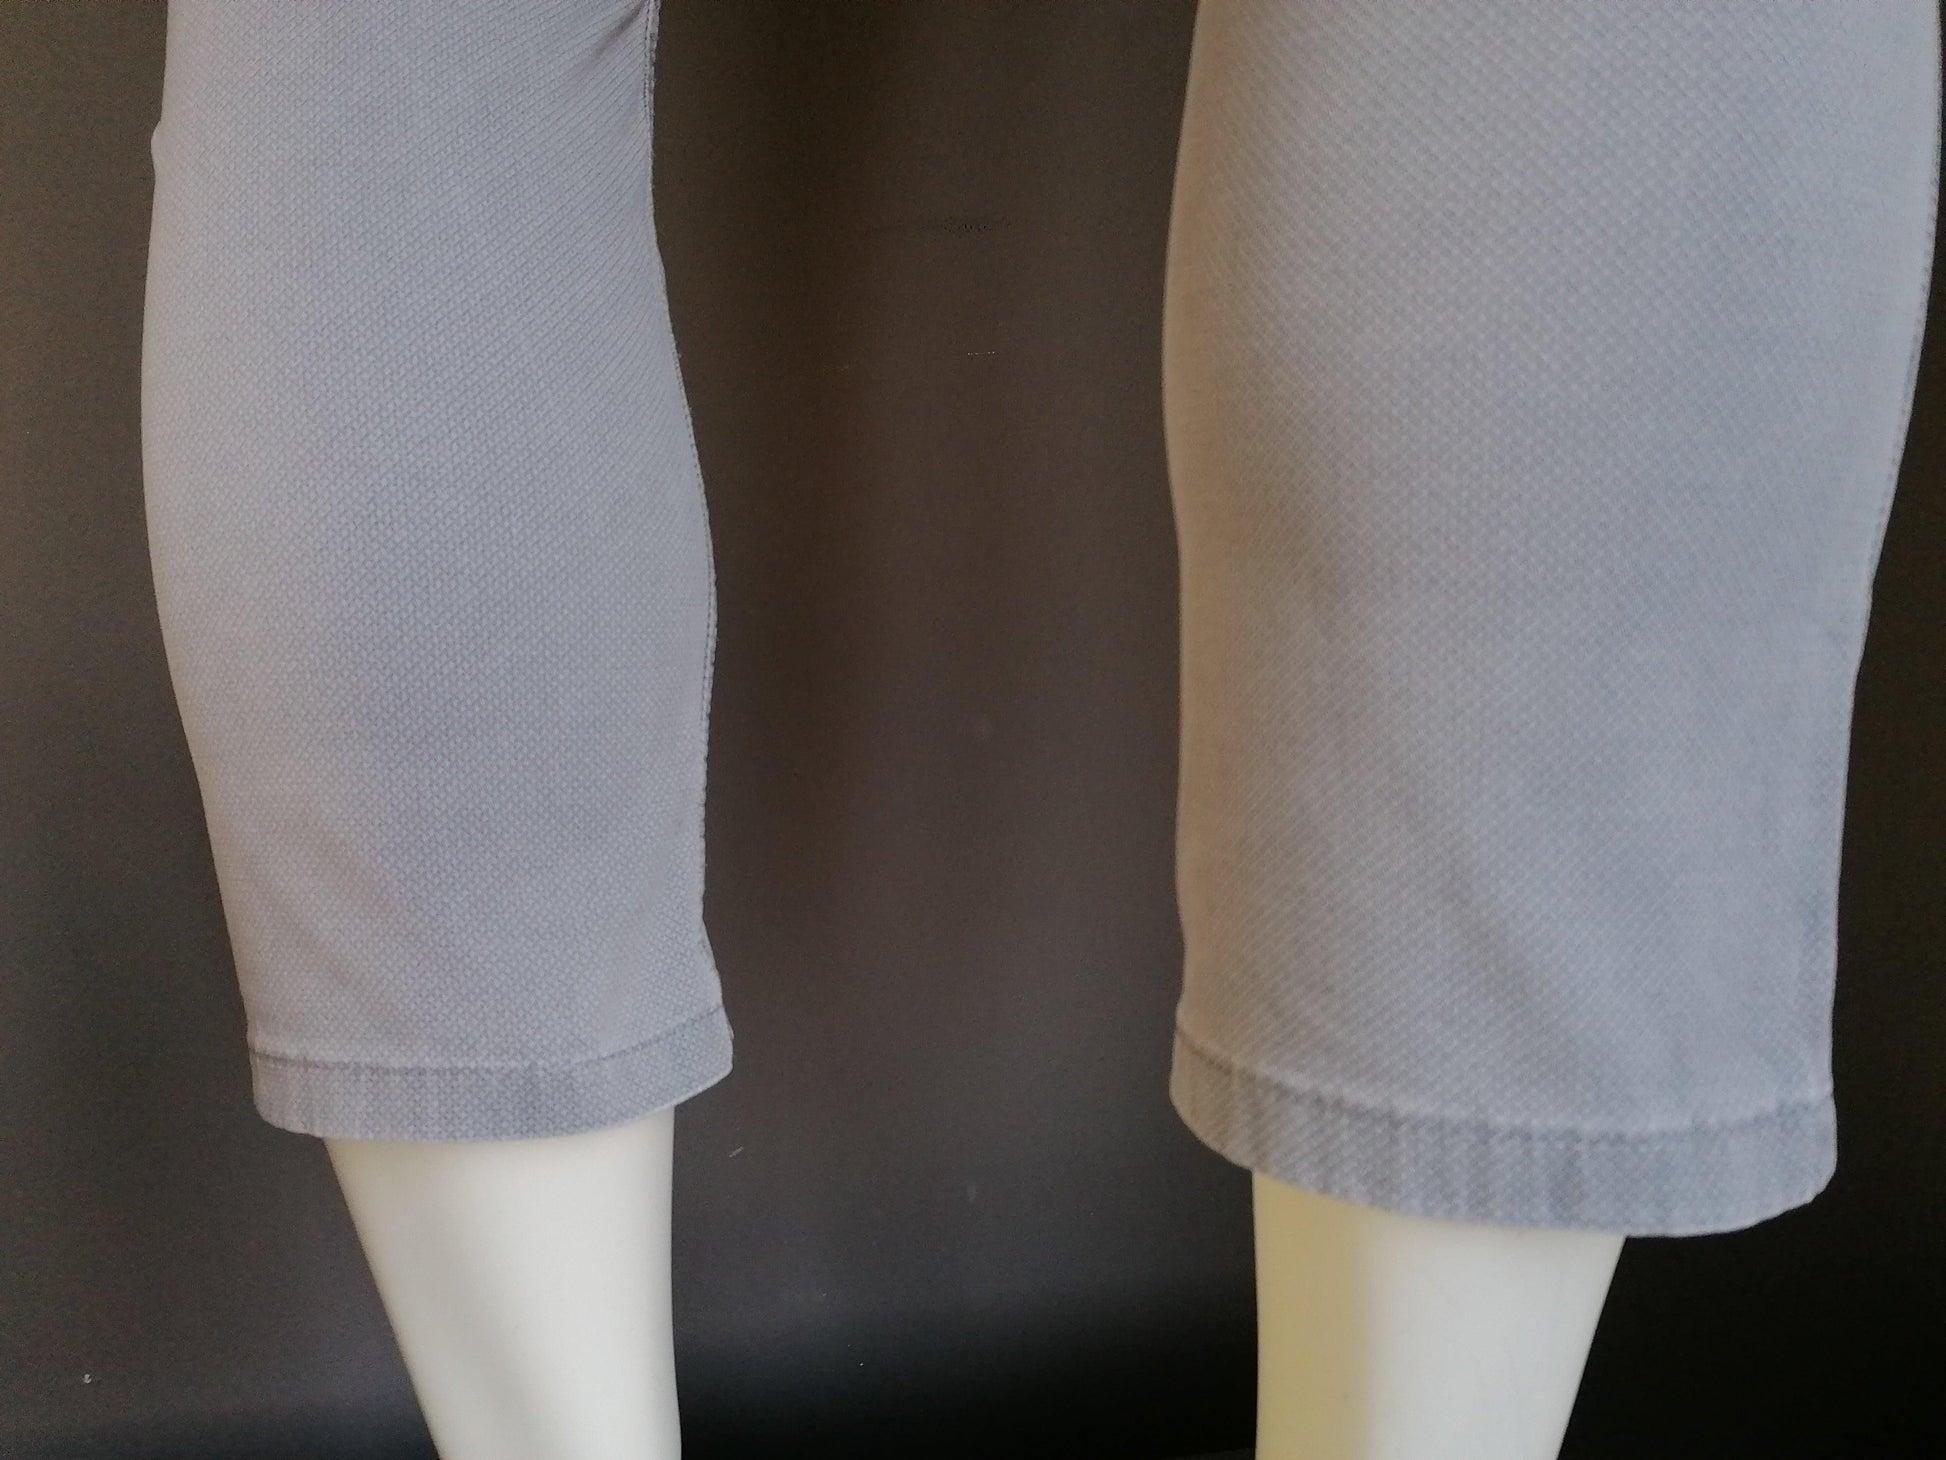 B keus: Gardeur pantalon / broek. Grijs motief. Kort model. Maat W33 - L65 cm. verkleuring - EcoGents